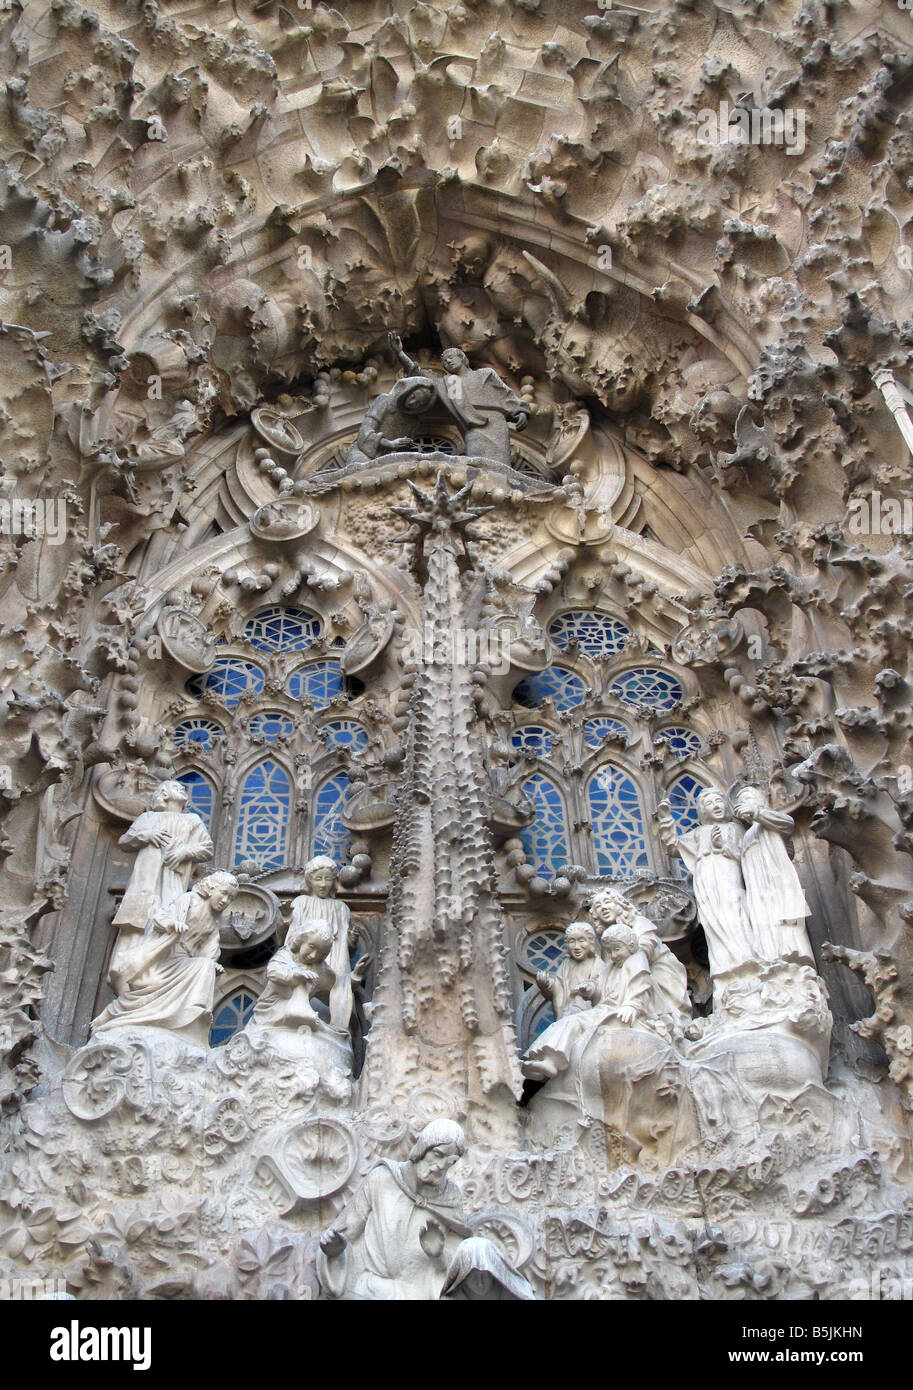 Frise sculptée en pierre d'enfants / angels à descendre sur la scène de la Nativité de la Sagrada Familia, Barcelone Banque D'Images